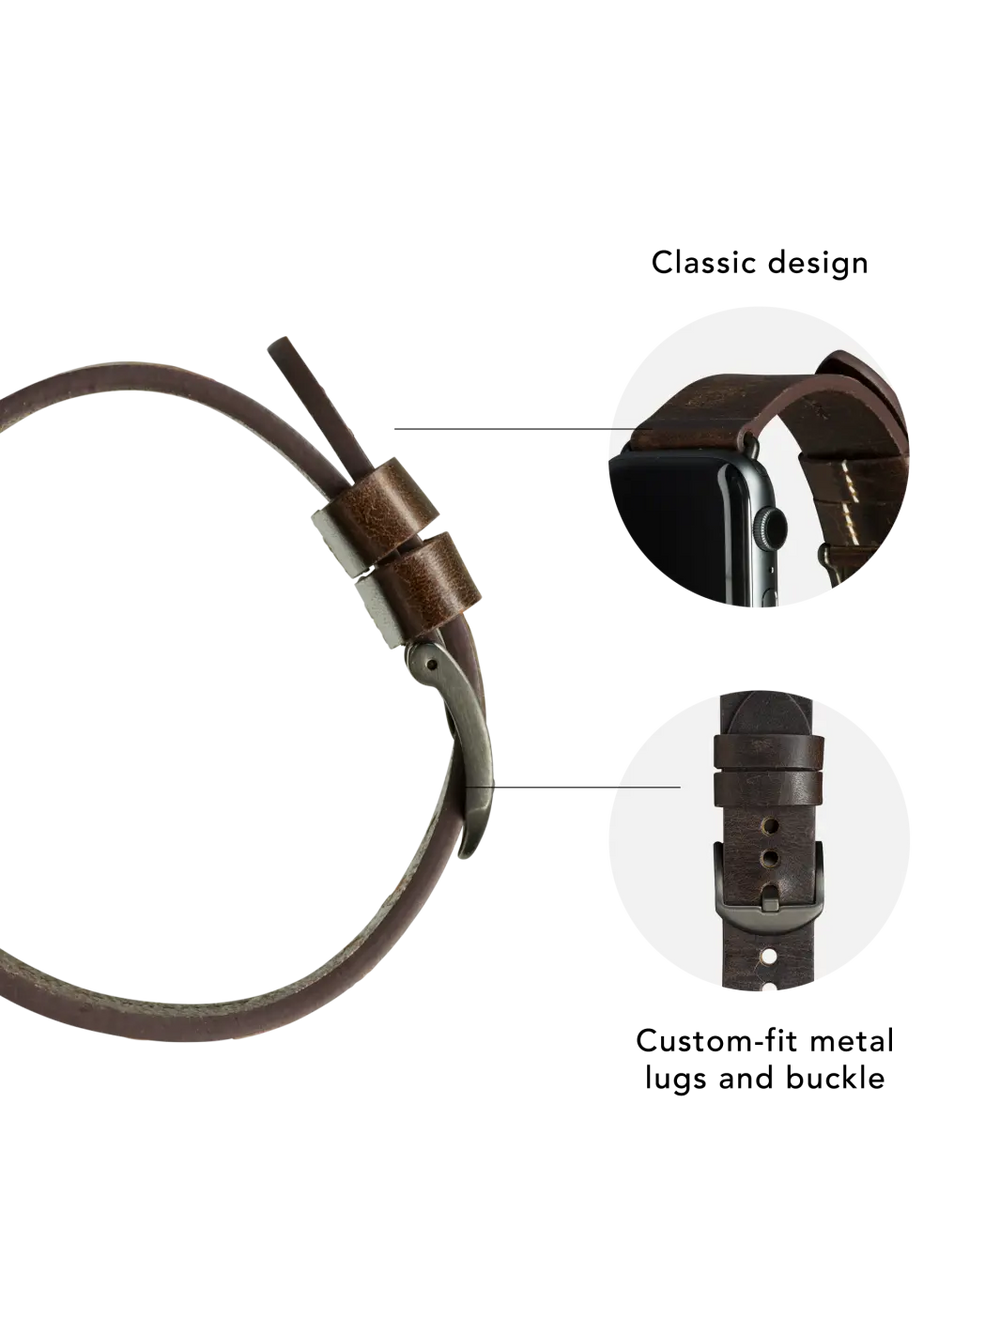 Bornholm Apple Watch strap#color_dark-brown-space-grey